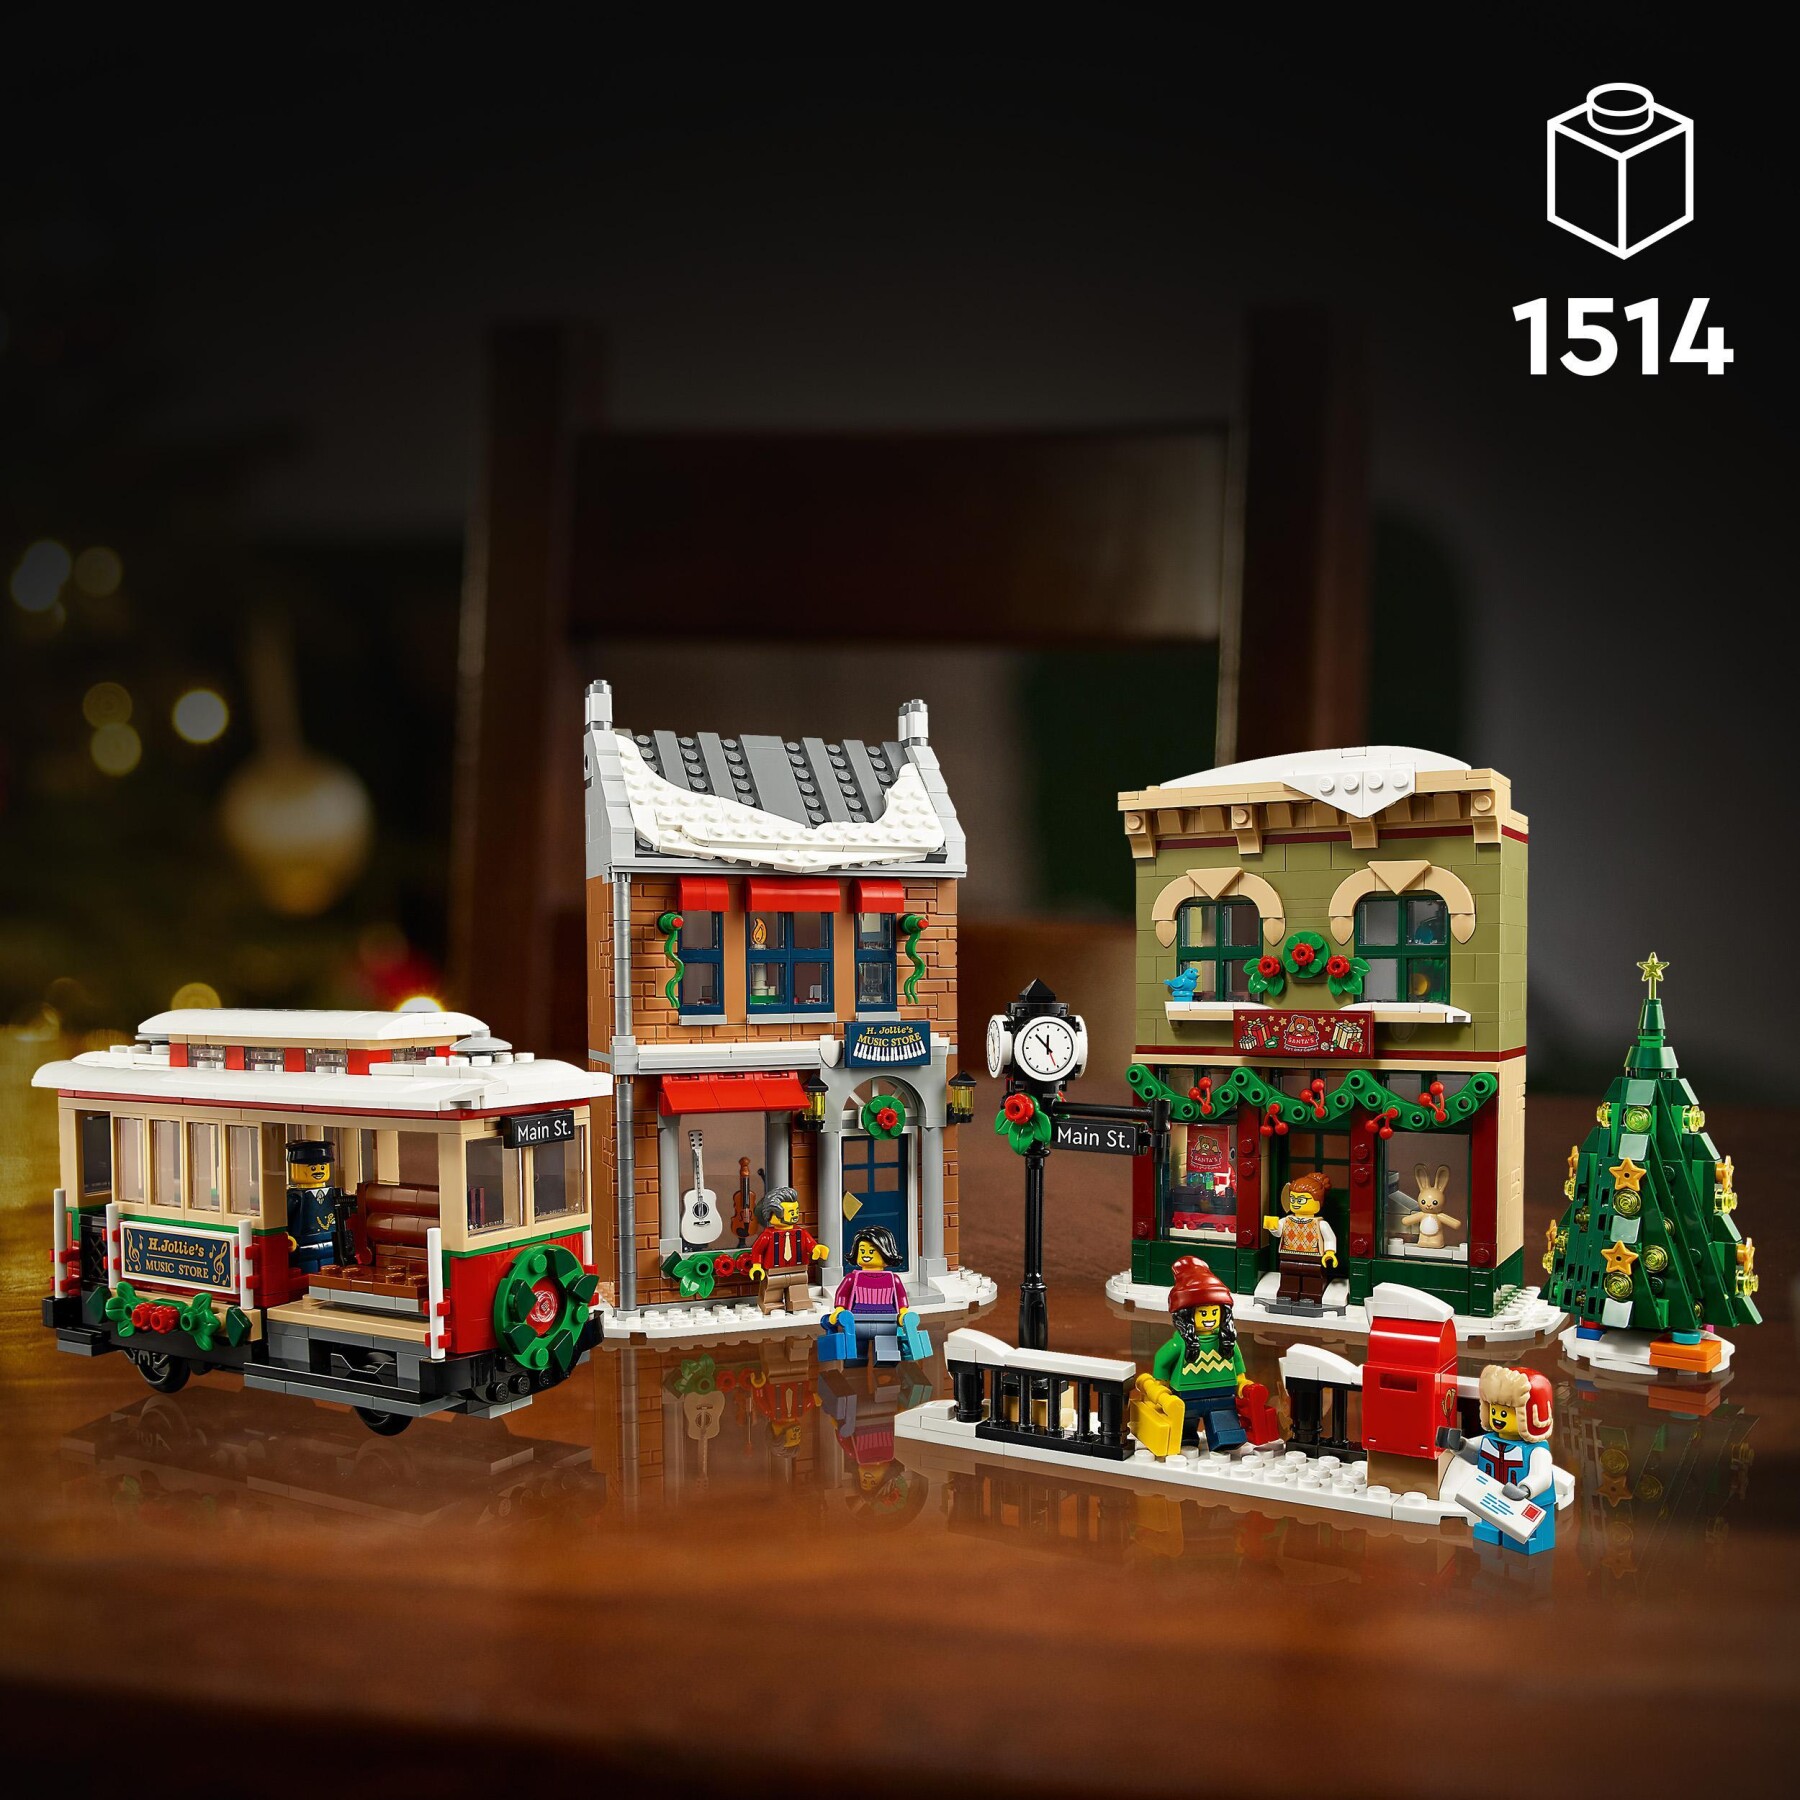 Lego icons 10308 festività nella strada principale, modellino da costruire di villaggio con decorazioni natalizie, idea regalo - LEGO ICONS